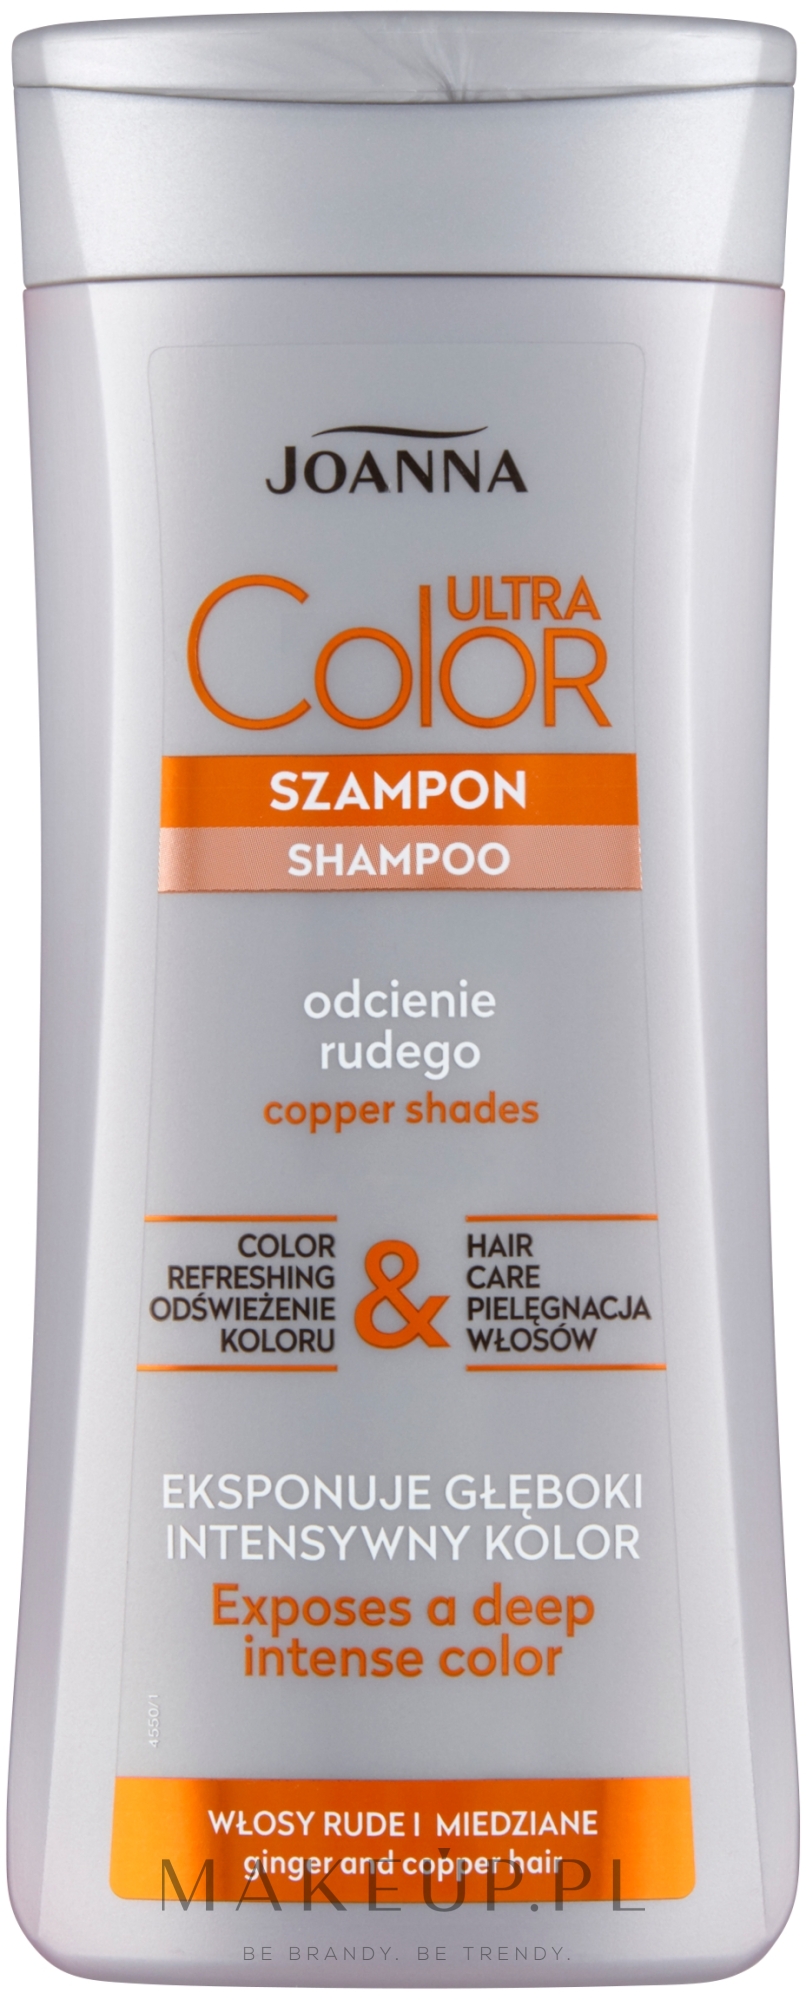 szampon do włosów przetłuszczających się i rudych